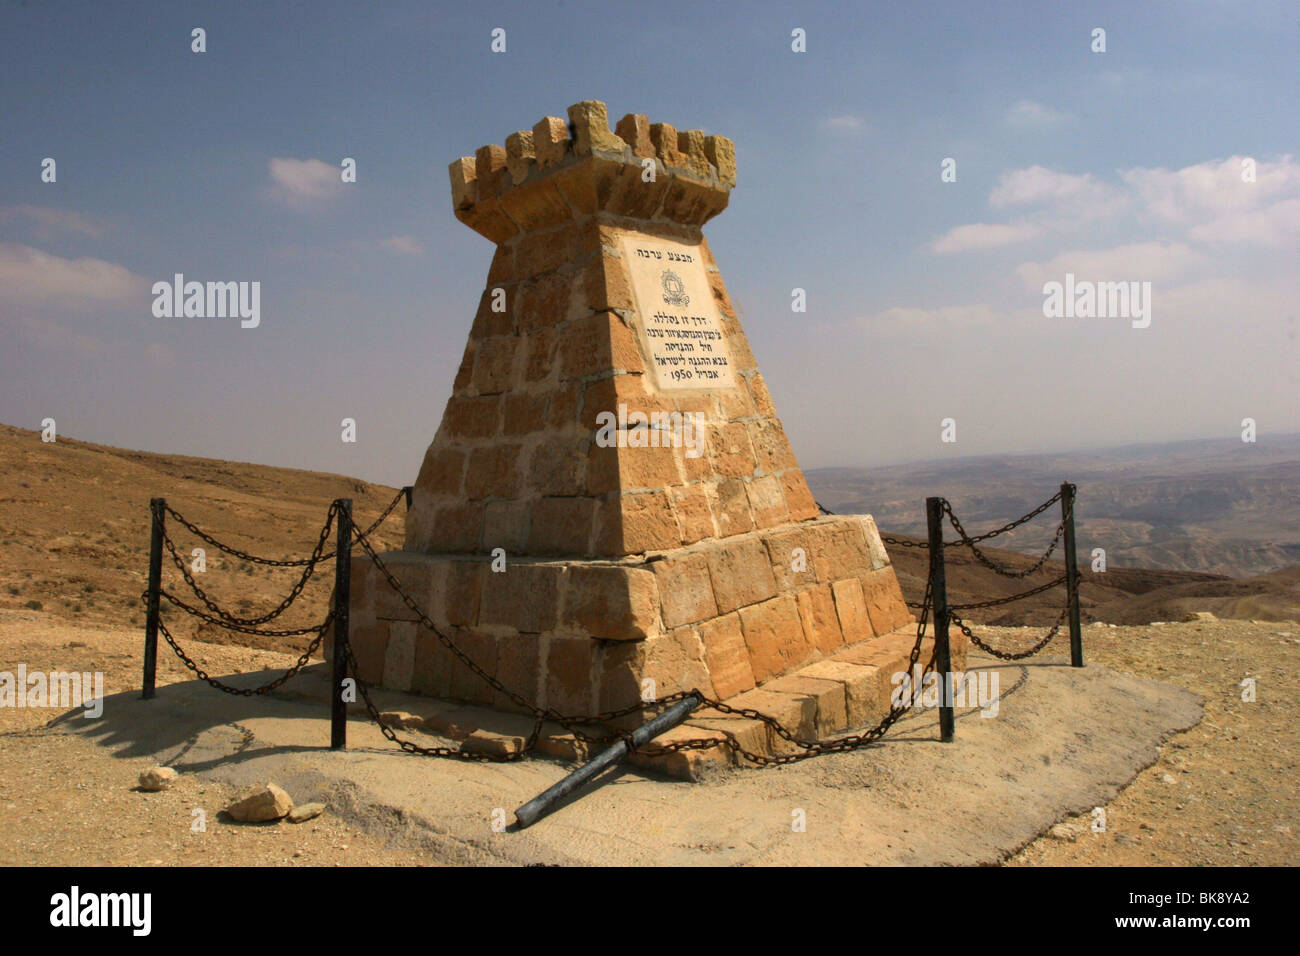 Un monumento para conmemorar los soldados del Cuerpo de Ingenieros militares que han allanado el camino hacia el mar muerto durante la guerra de la independencia. Foto de stock